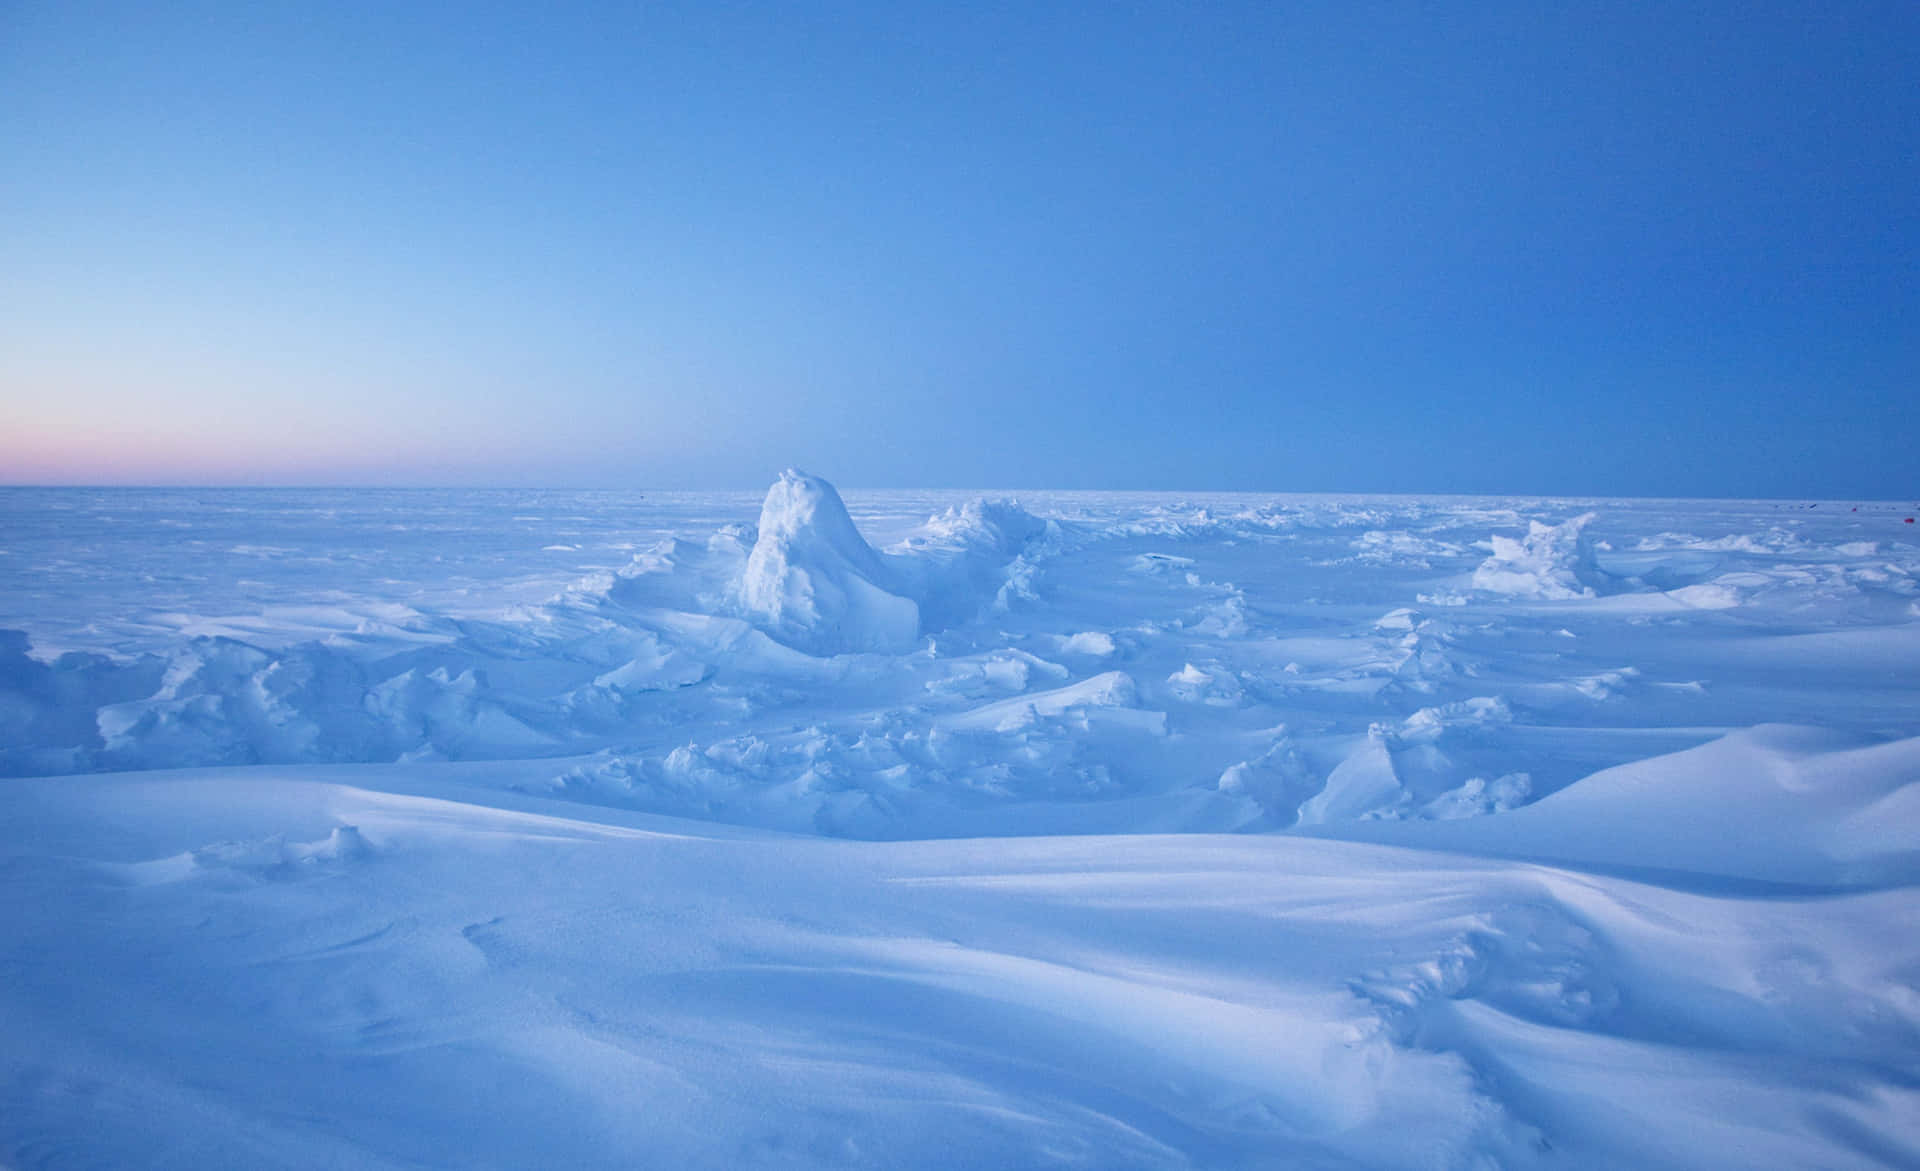 Imagende Una Tundra Congelada En El Polo Norte.